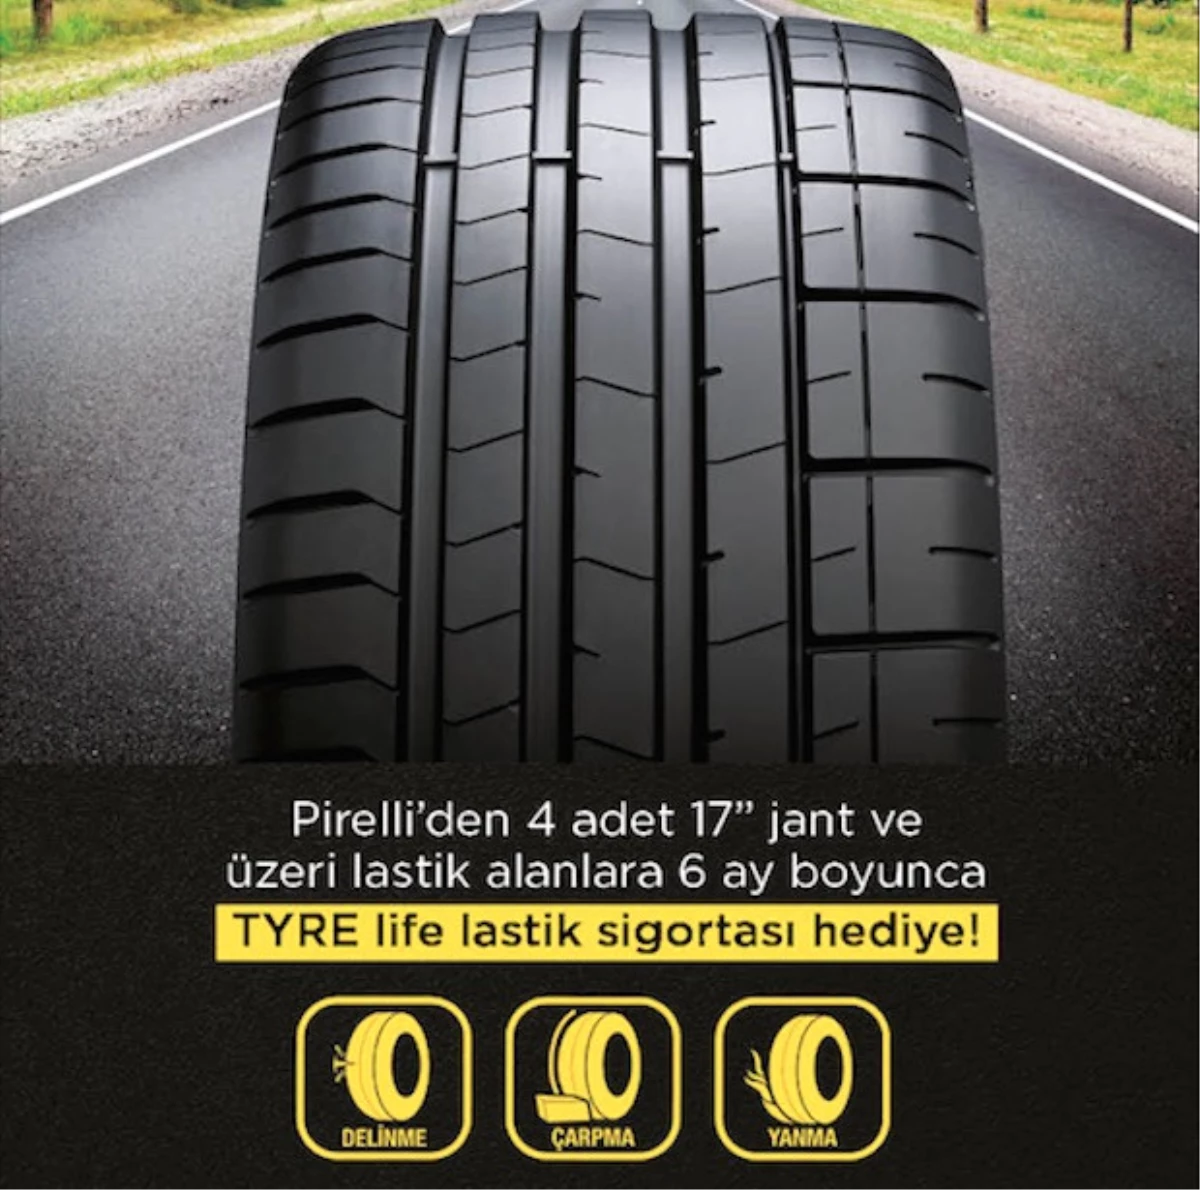 Pirelli\'den Ücretsiz Tyrelife Lastik Sigortası Kampanyası